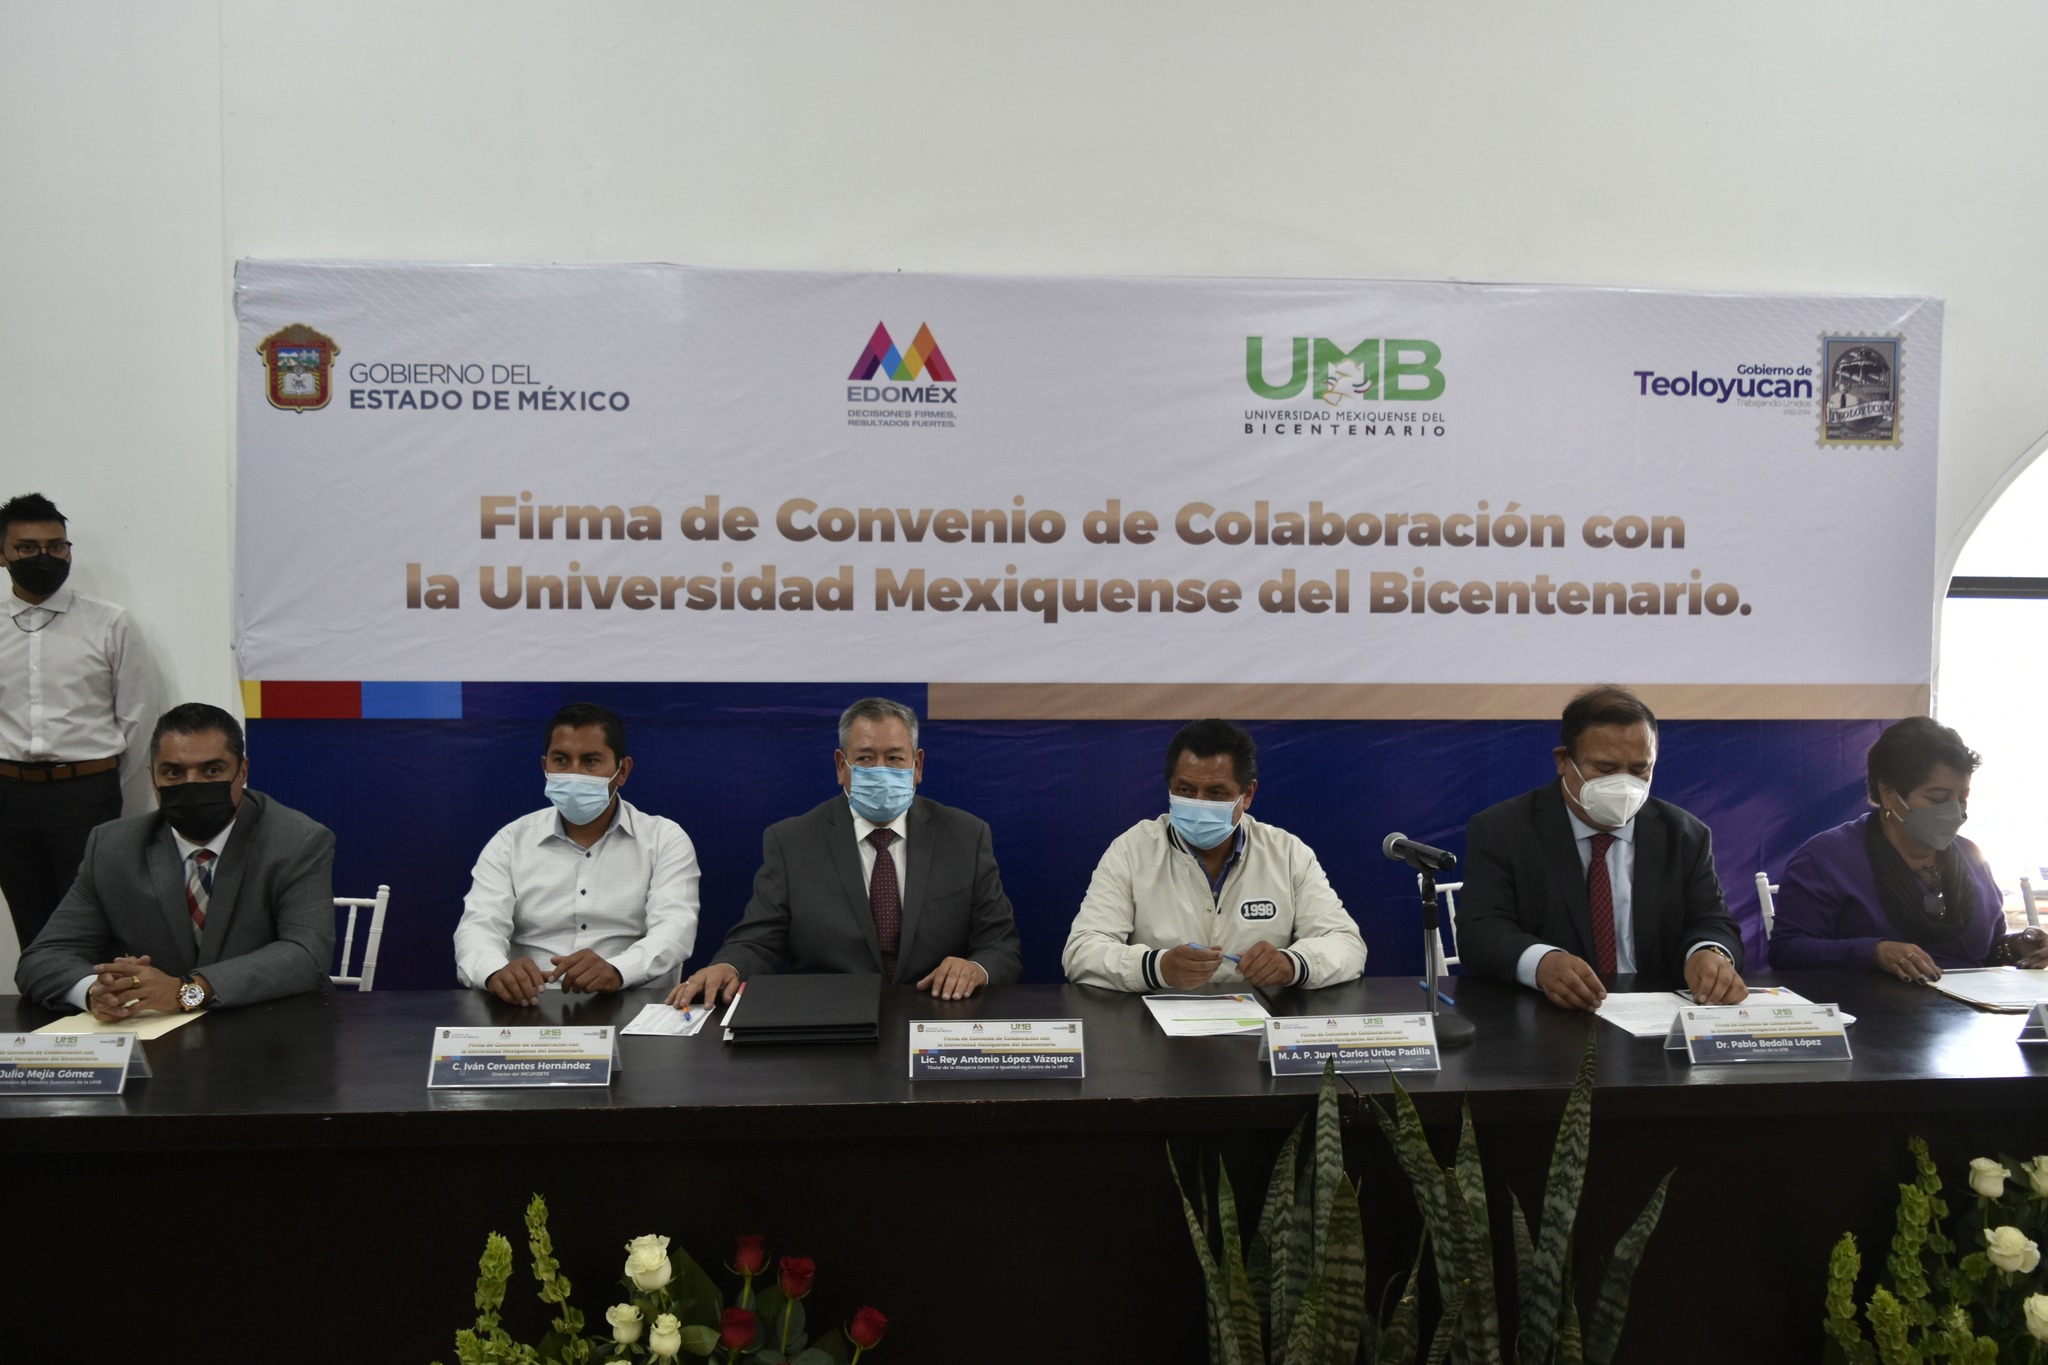 Firma de Convenio de Colaboración con la Universidad Mexiquense del Bicentenario